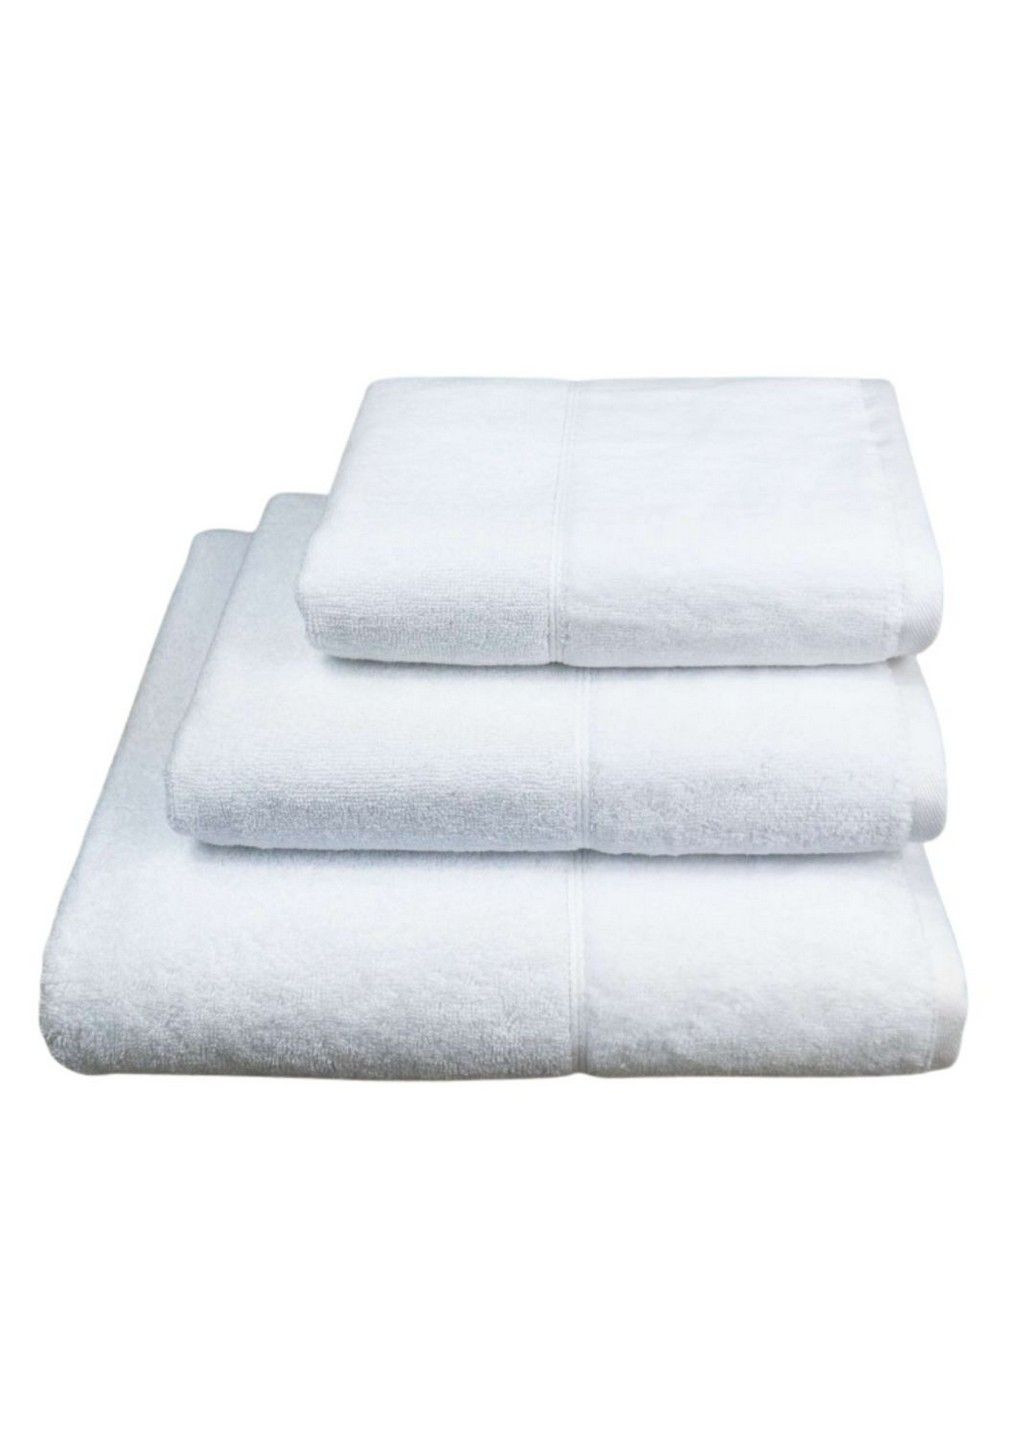 GM Textile полотенце махровое миладо, 70*140 см (бордюр велюр) белый производство - Узбекистан